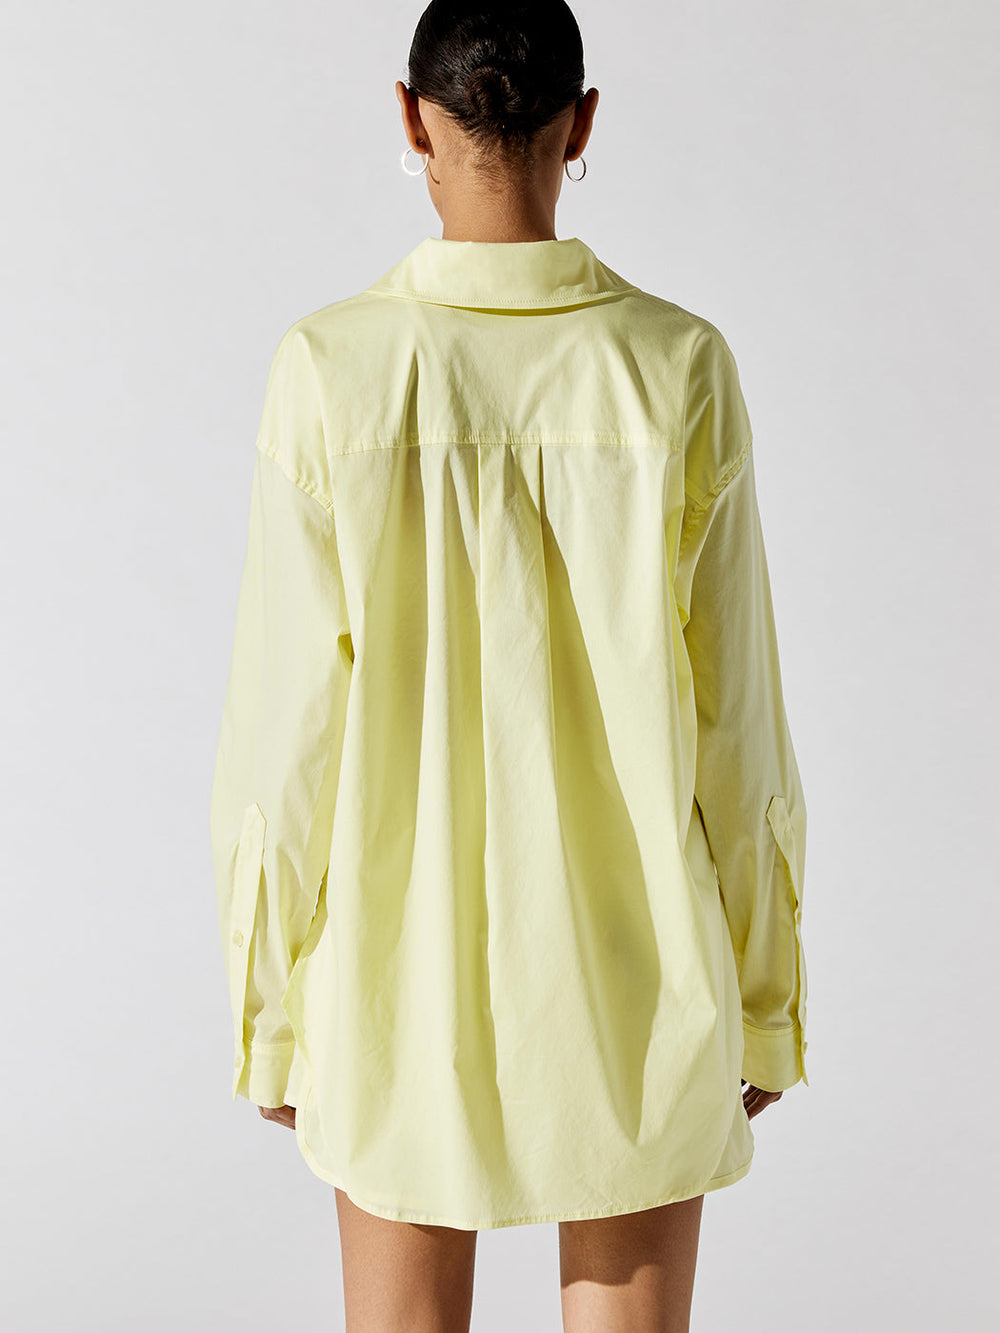 Palma Shirt - Yellow